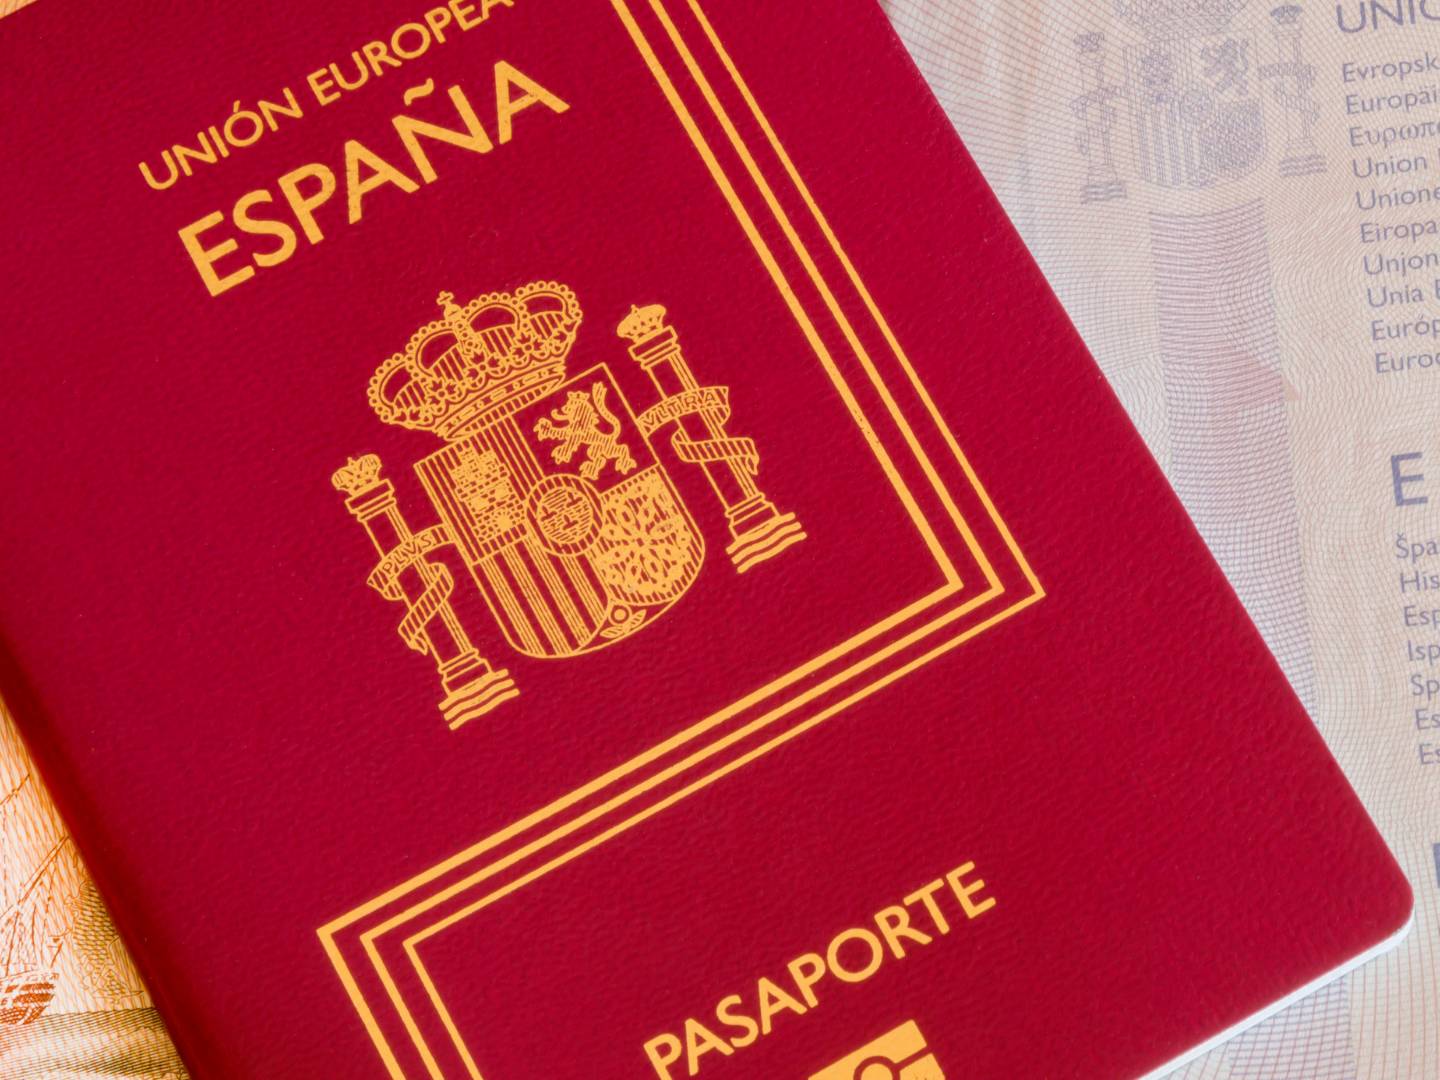 Spanish passport